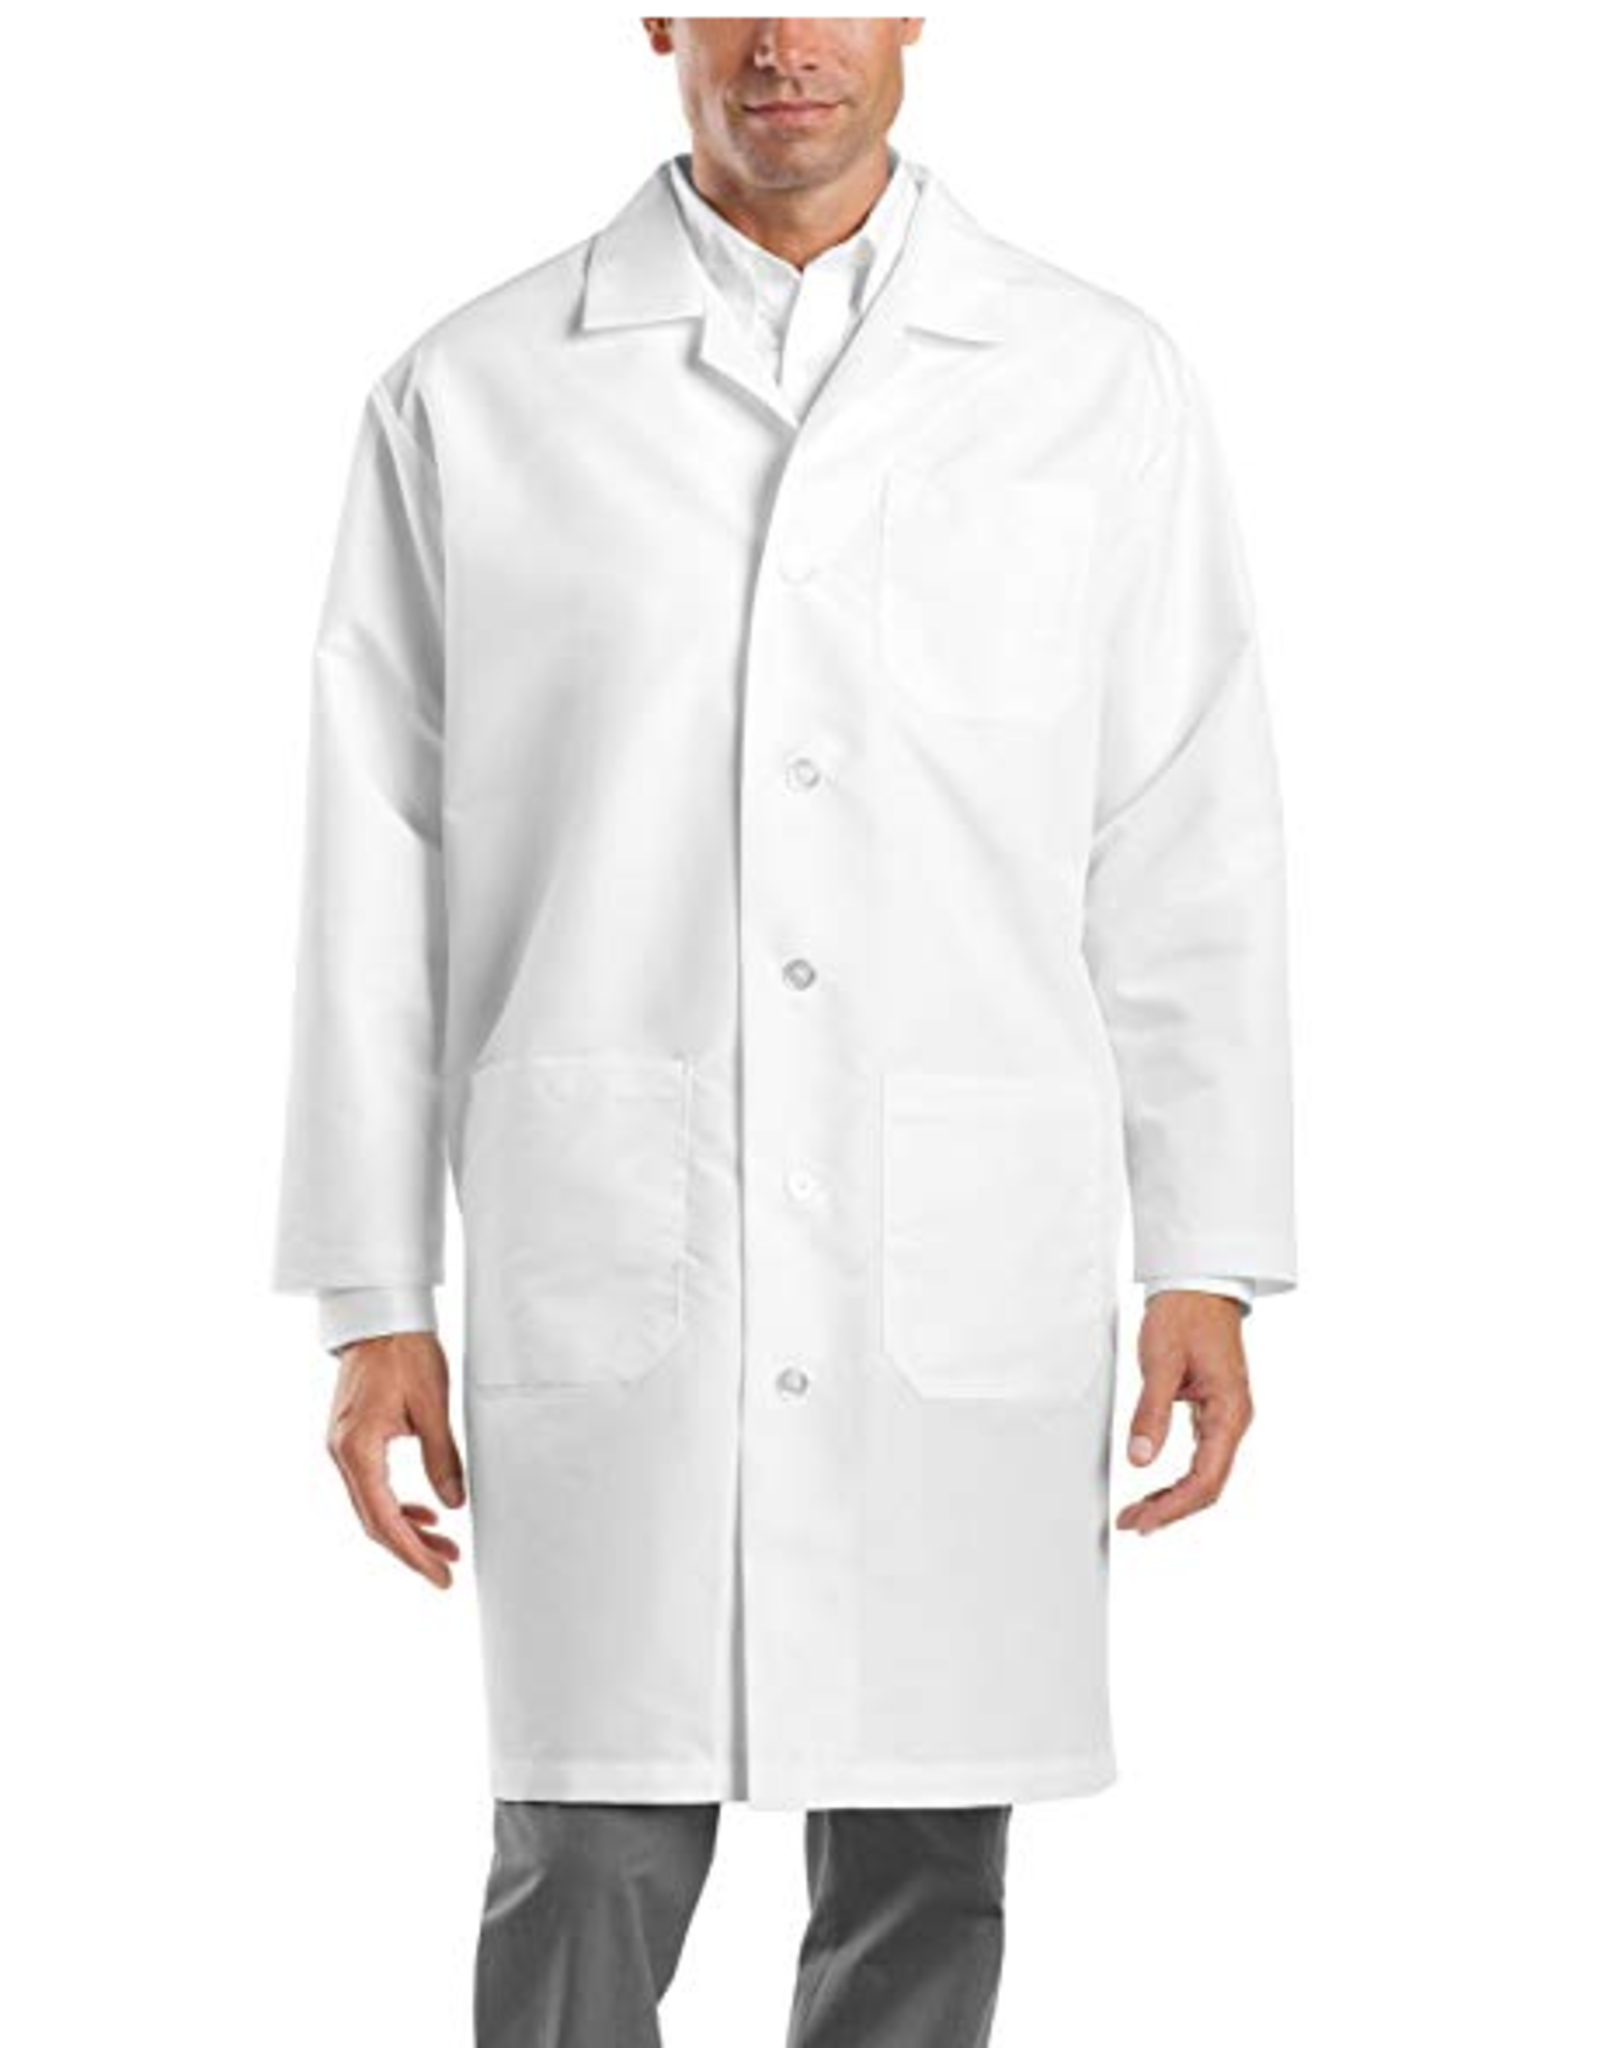 MedGear 3003 MedGear LAT 39' Long Sleeve Lab Coat